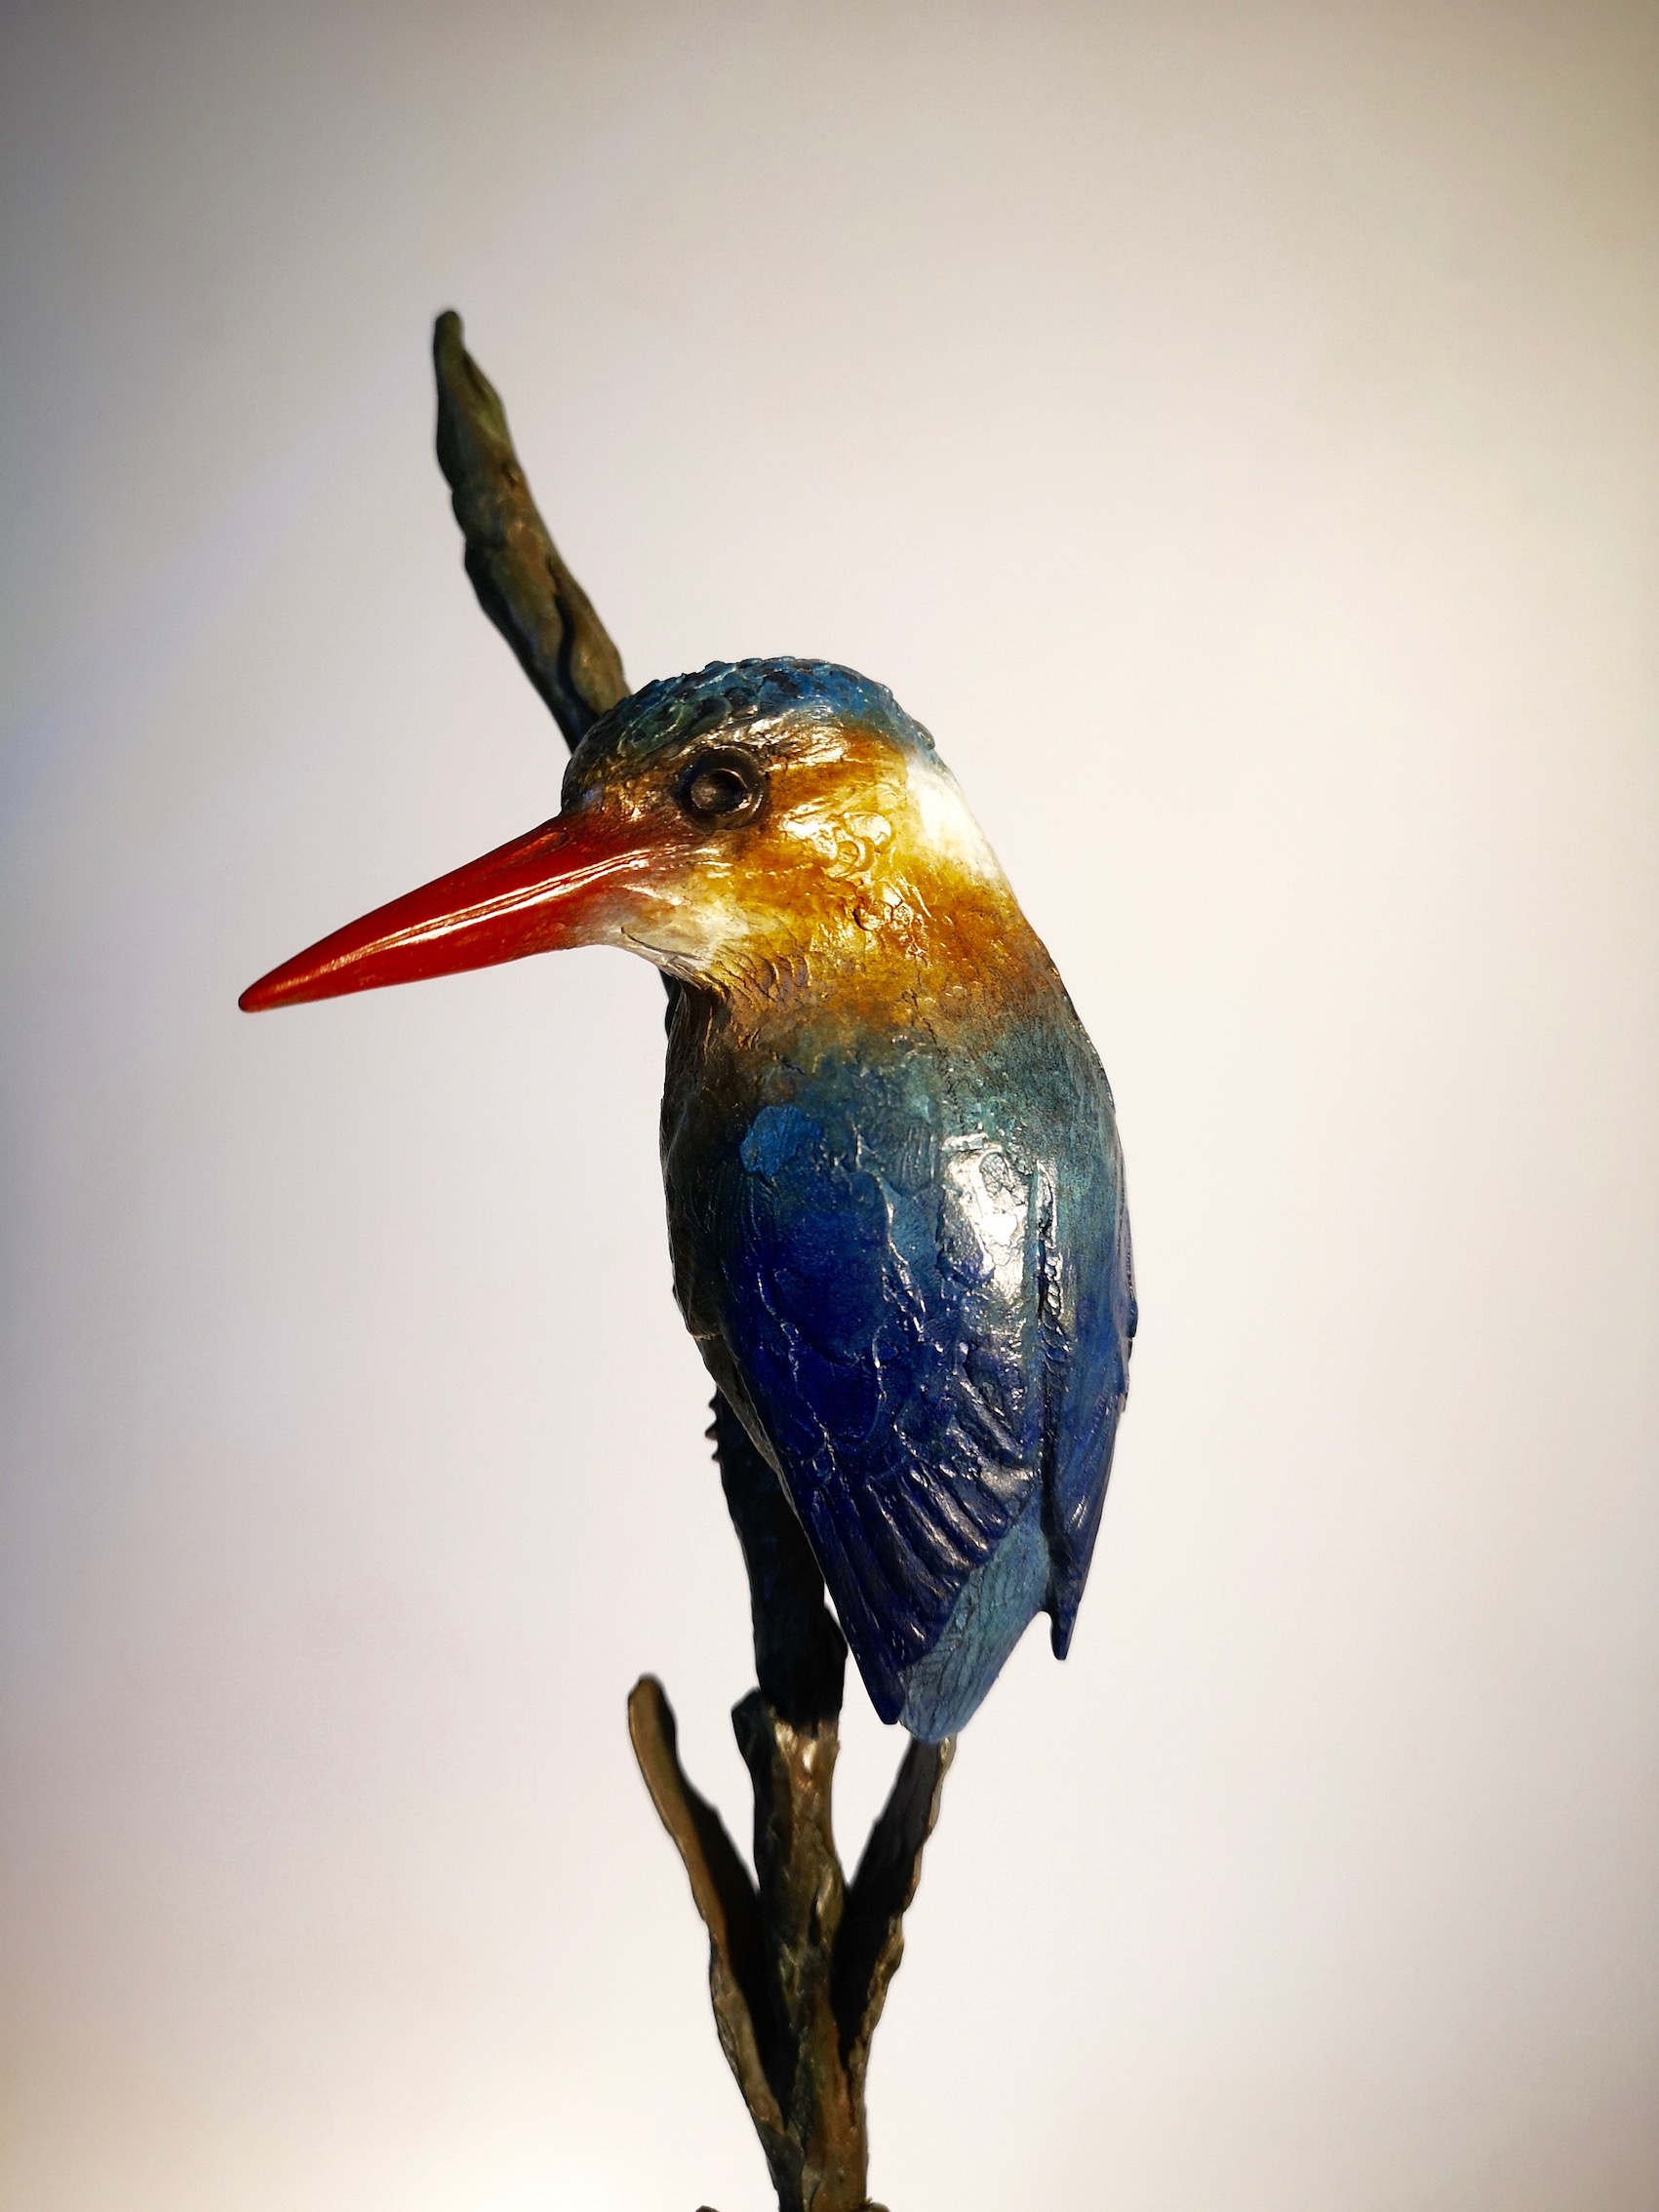 Malachite Kingfisher